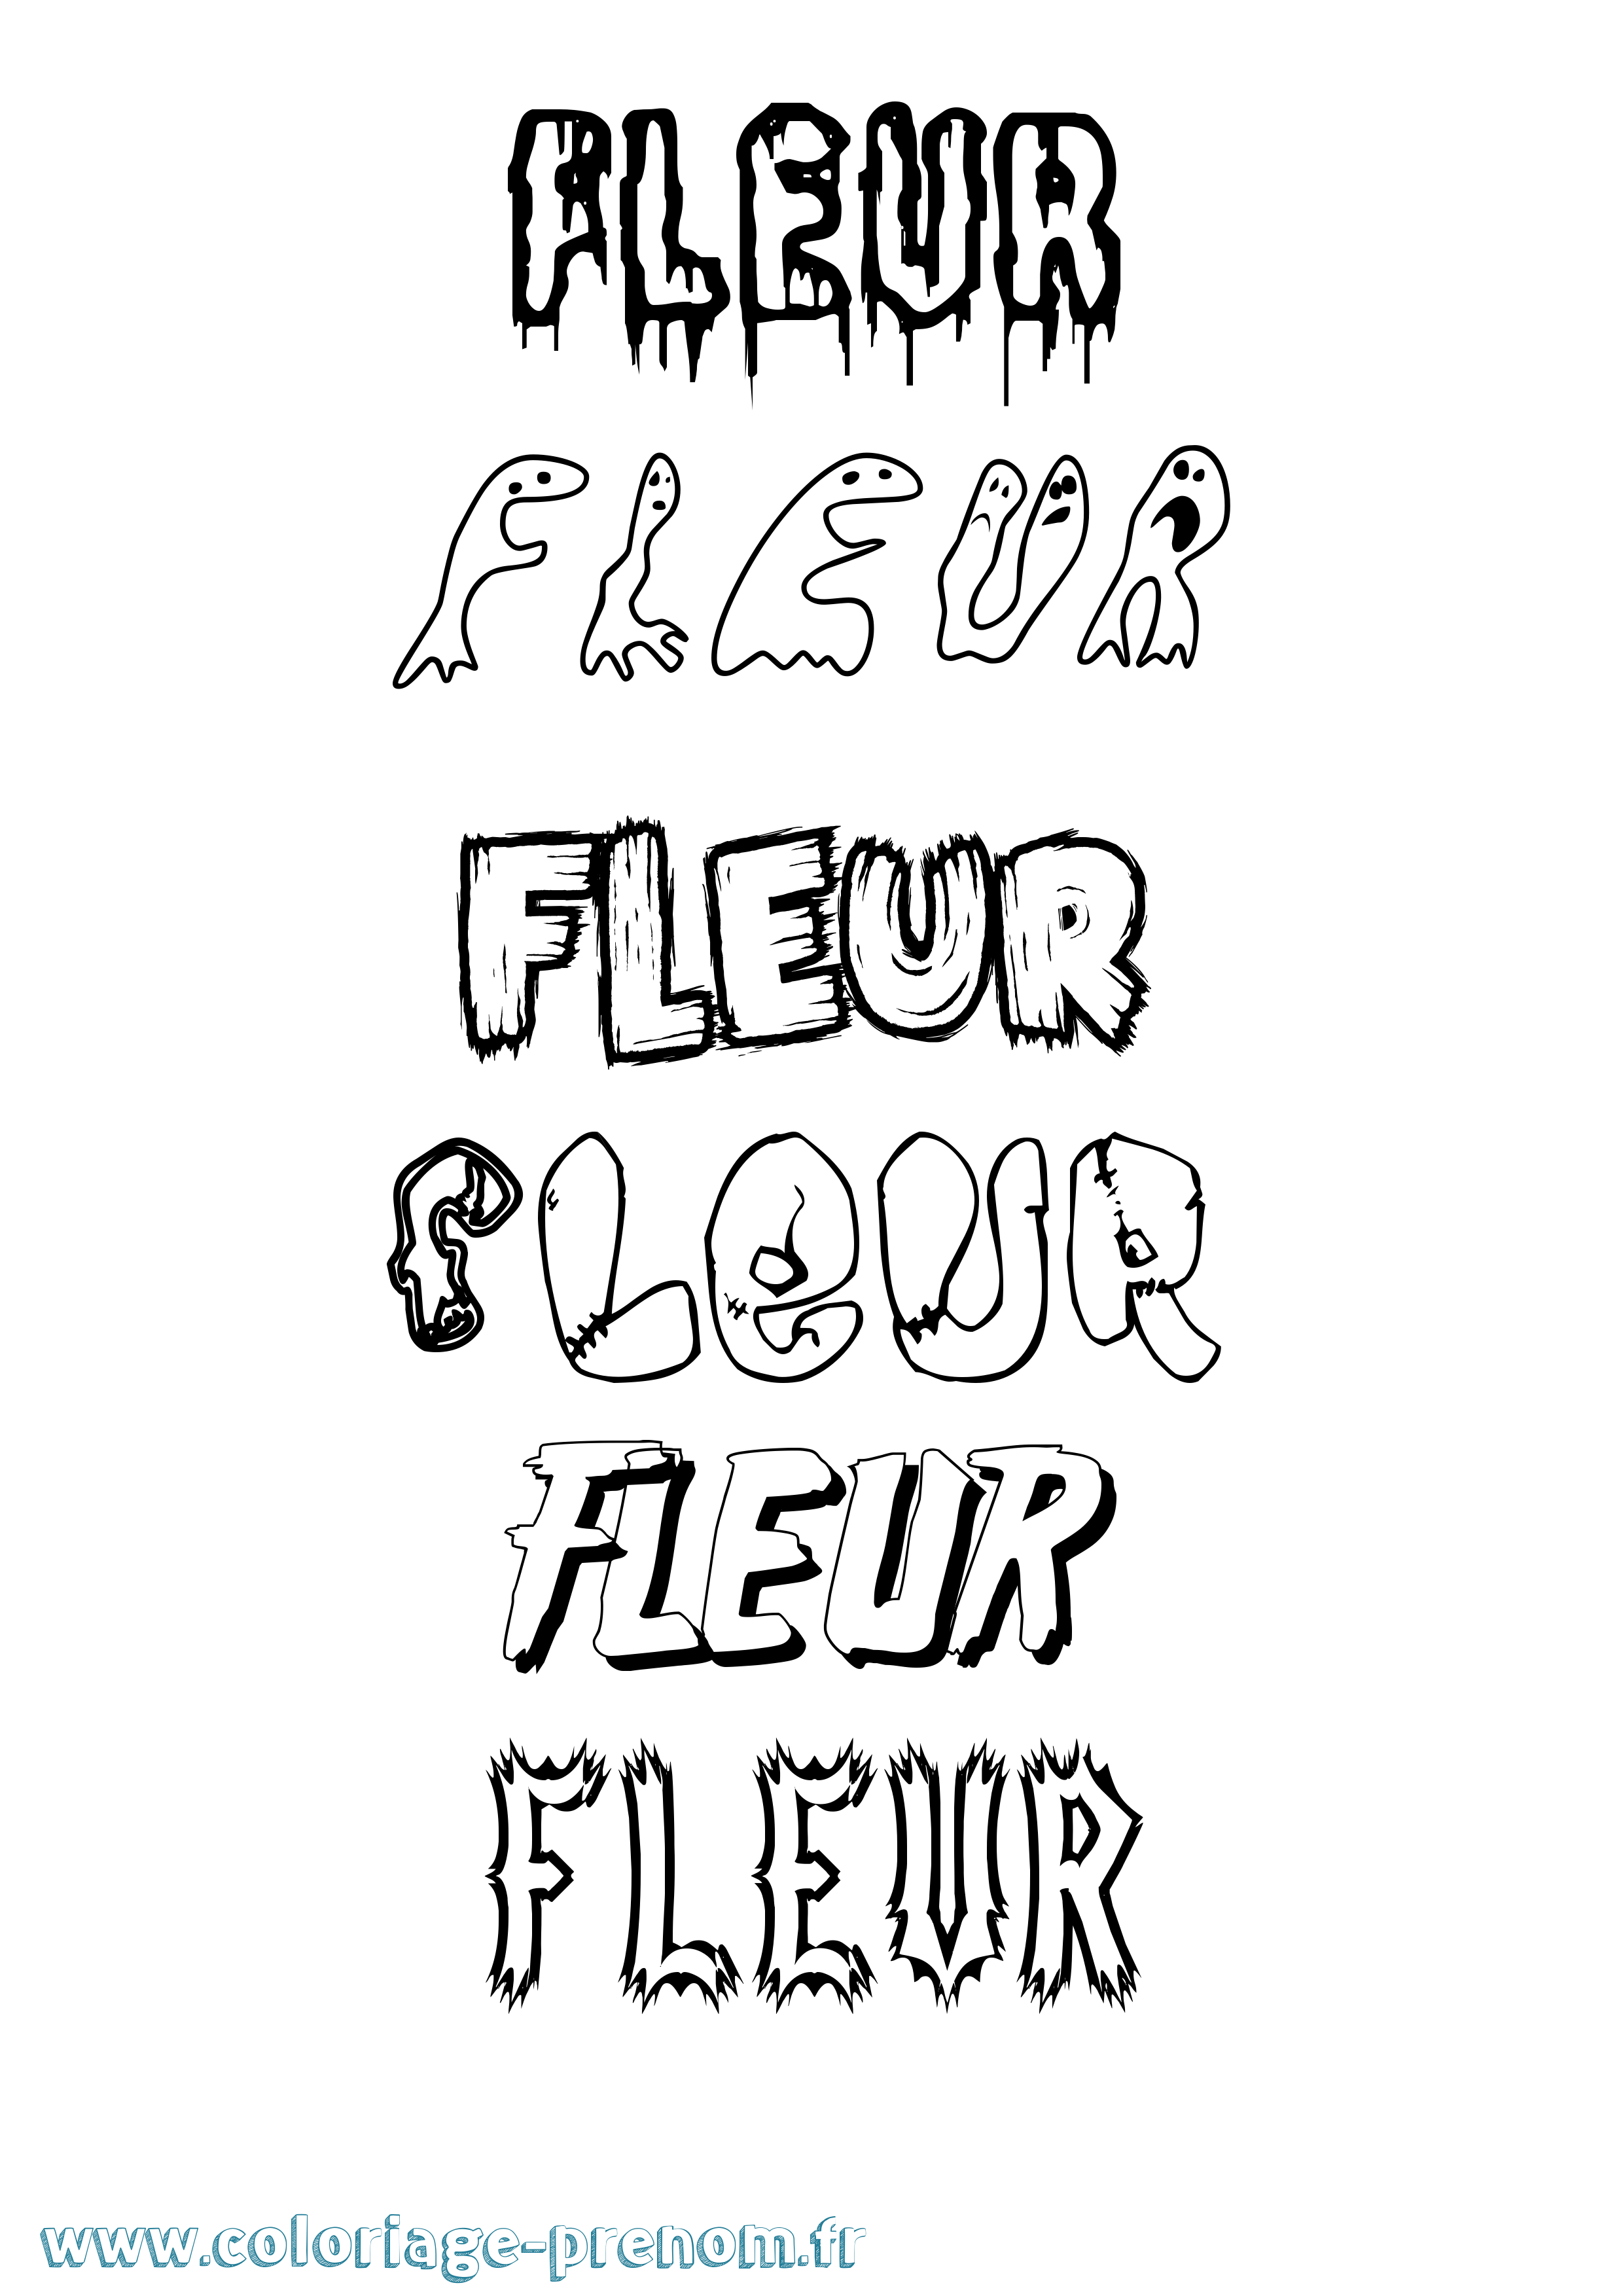 Coloriage prénom Fleur Frisson